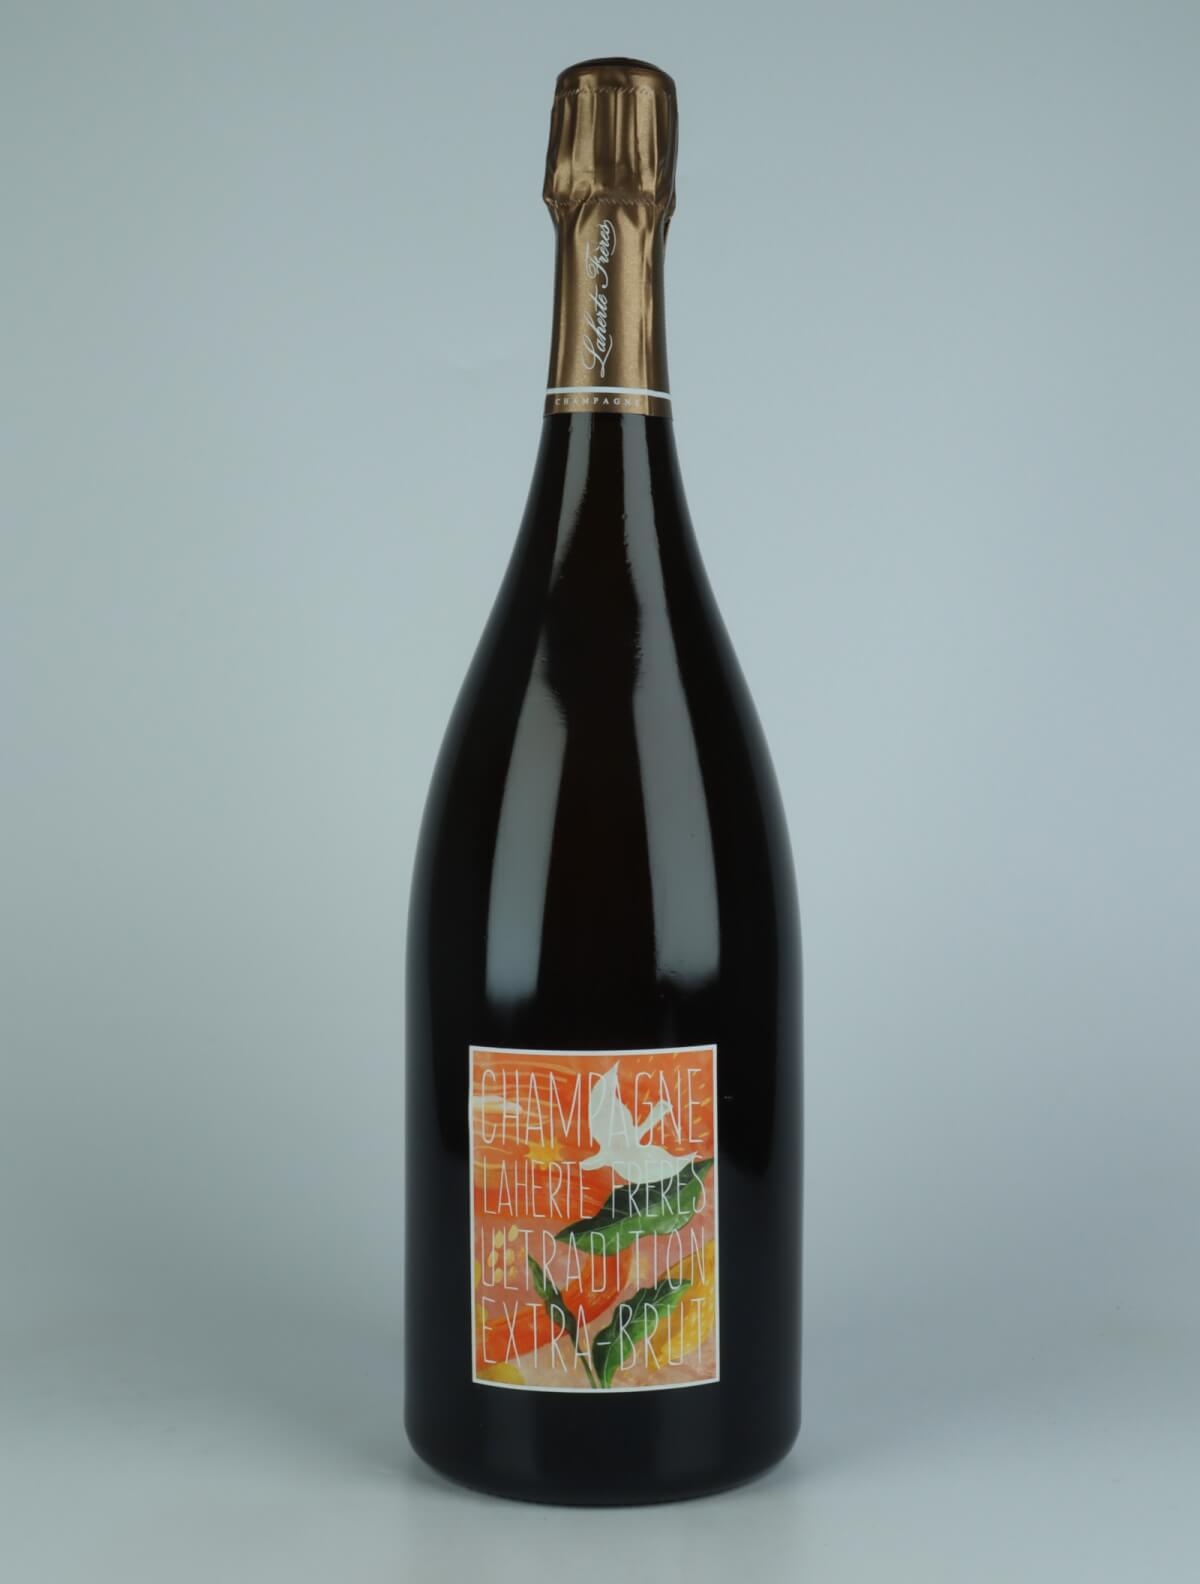 A bottle N.V. Ultradition - Extra Brut Sparkling from Laherte Frères, Champagne in France